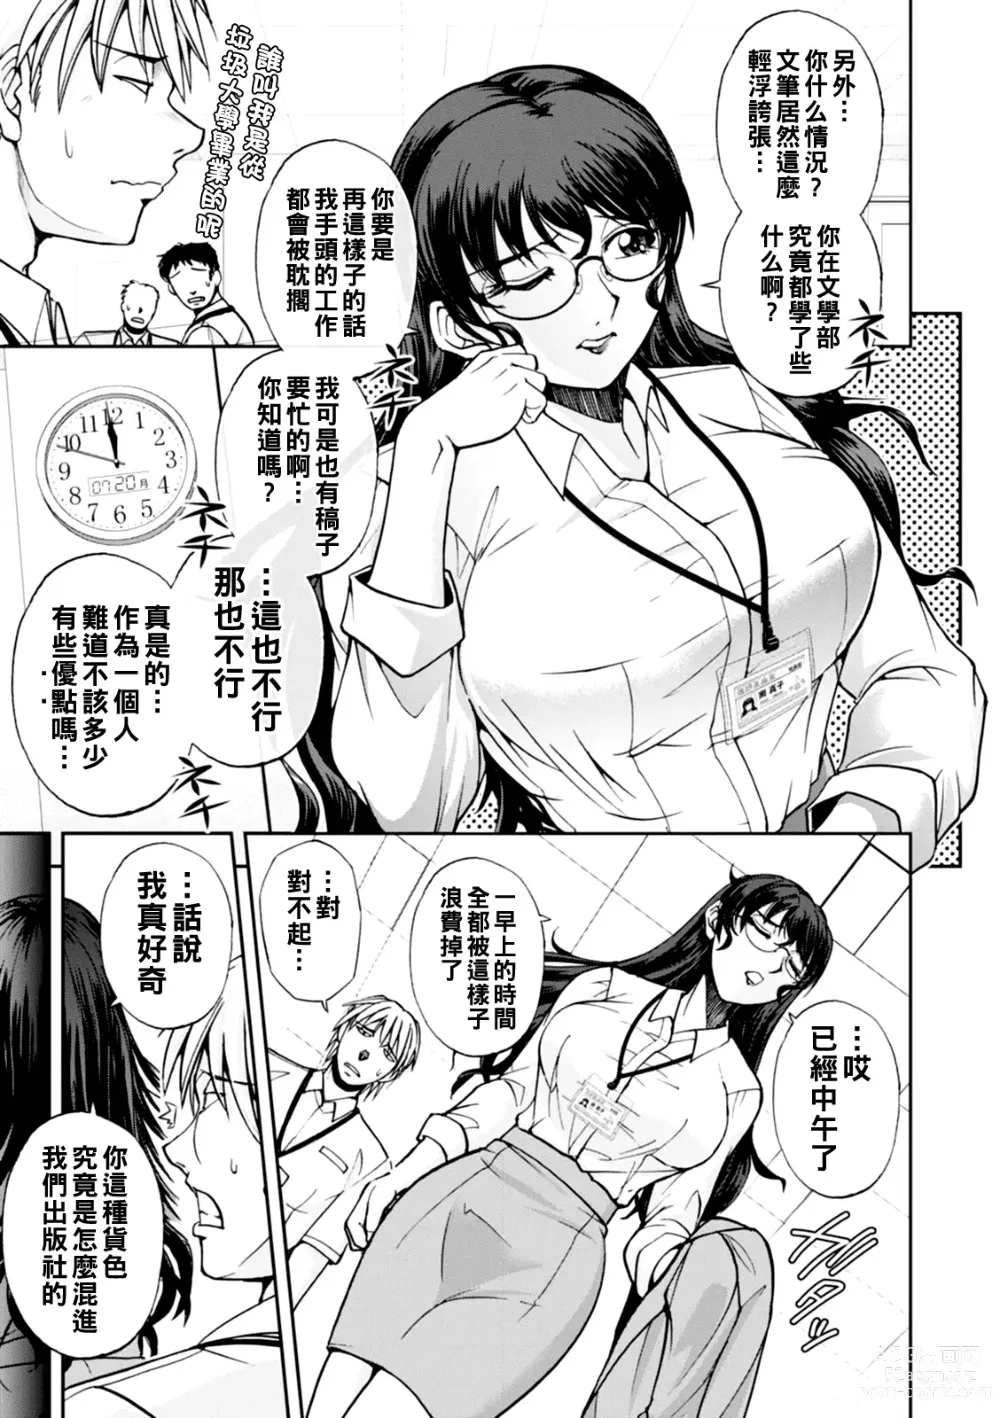 Page 6 of manga Maruhadaka no Minami-san Ch. 1-4